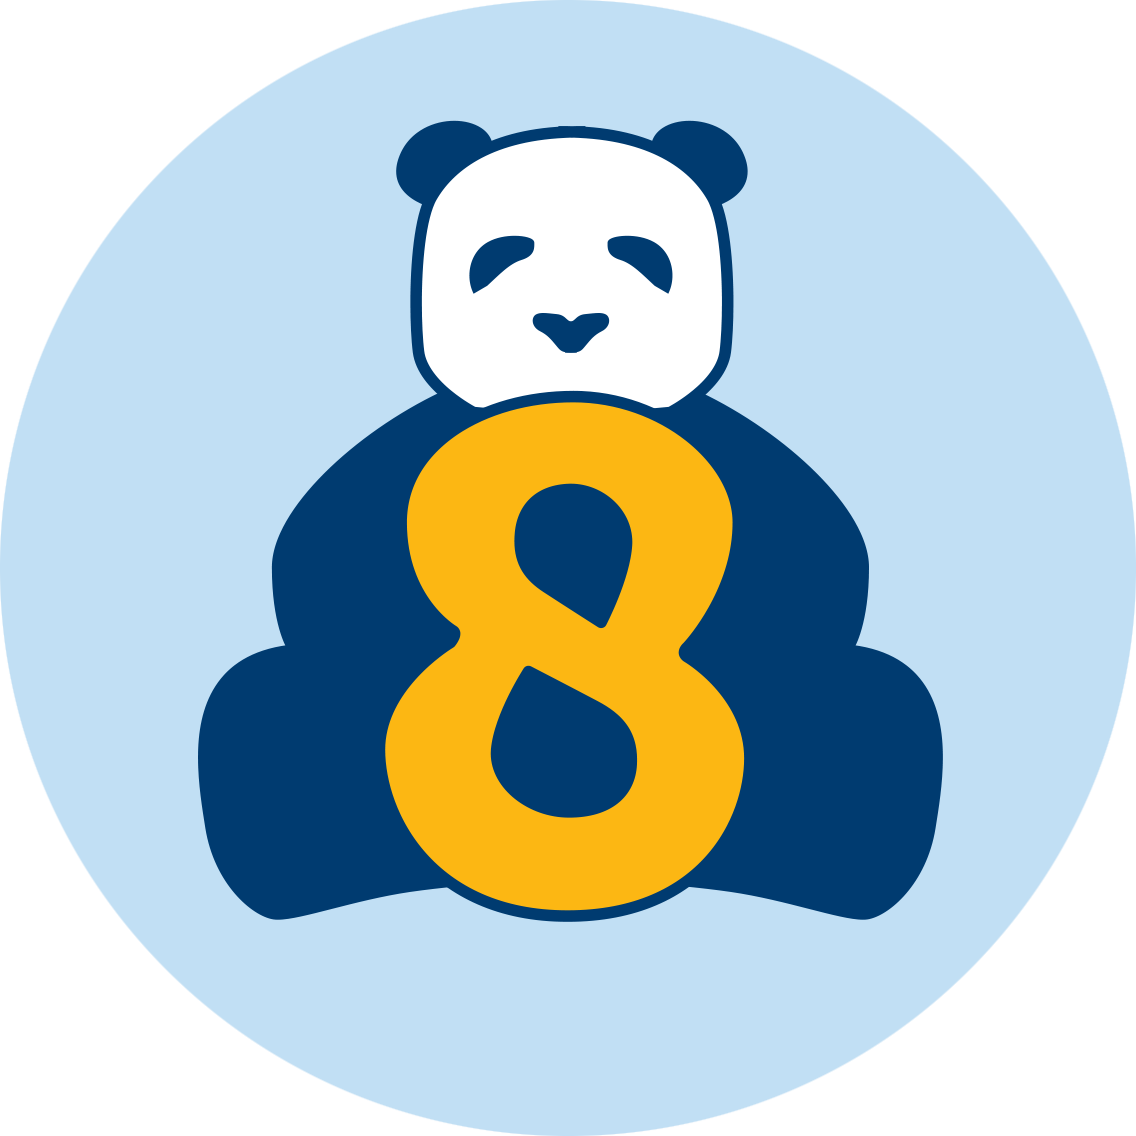 一隻熊貓坐在數字8後面。